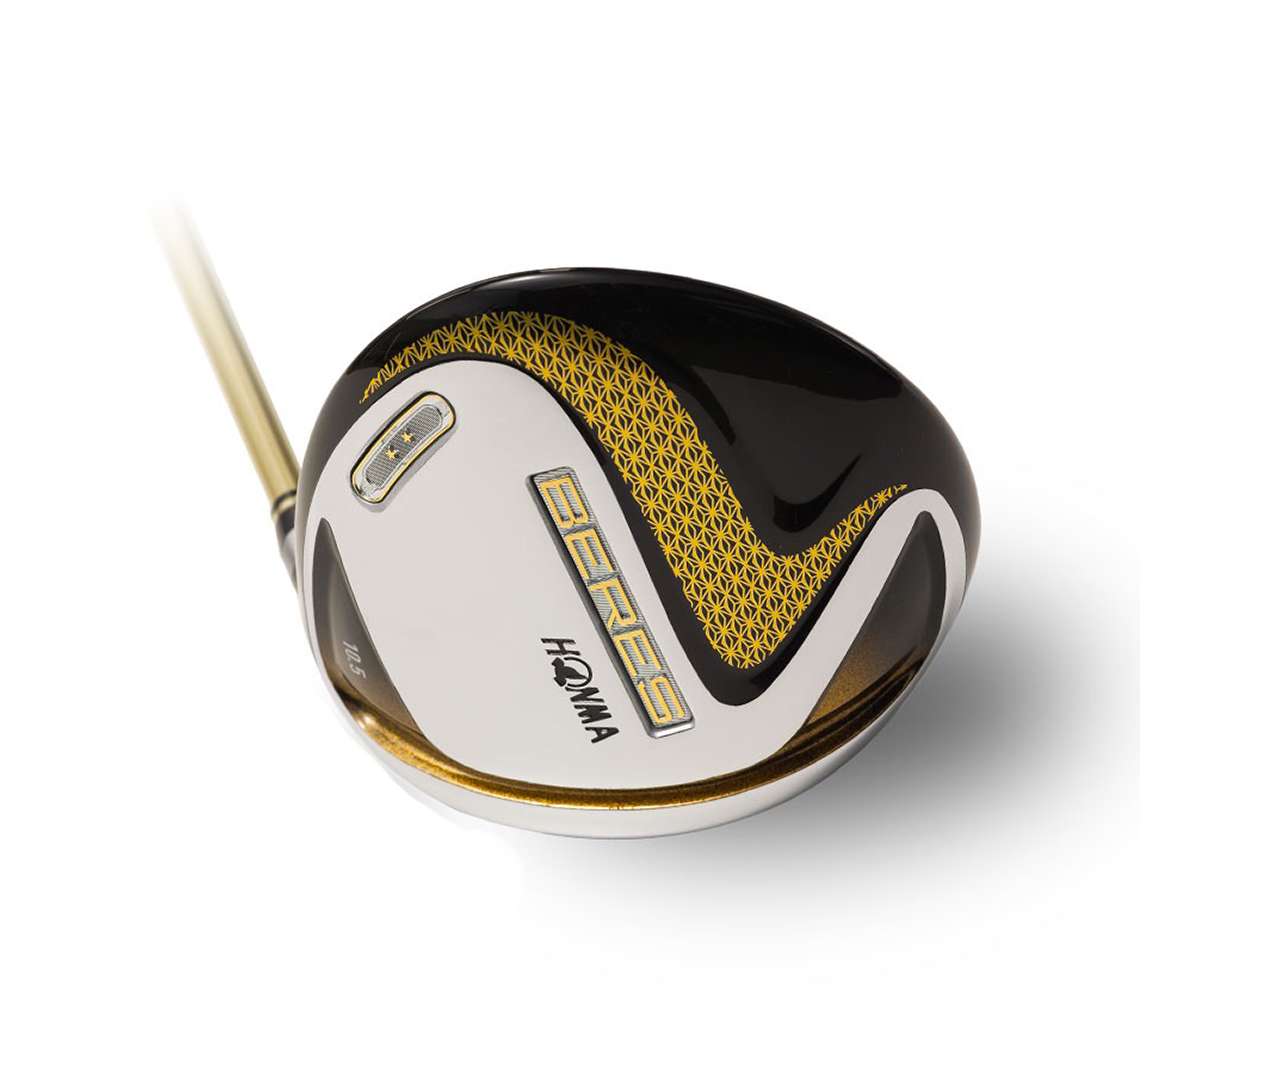 ไม้กอล์ฟ ไม้ตีกอล์ฟ Honma Beres S-07 Driver Golf (Driver 9.5-10.5องศา  R-SR Graphite Shaft) ราคาสุดพิเศษ ลดล้างสต็อก (DVH001)